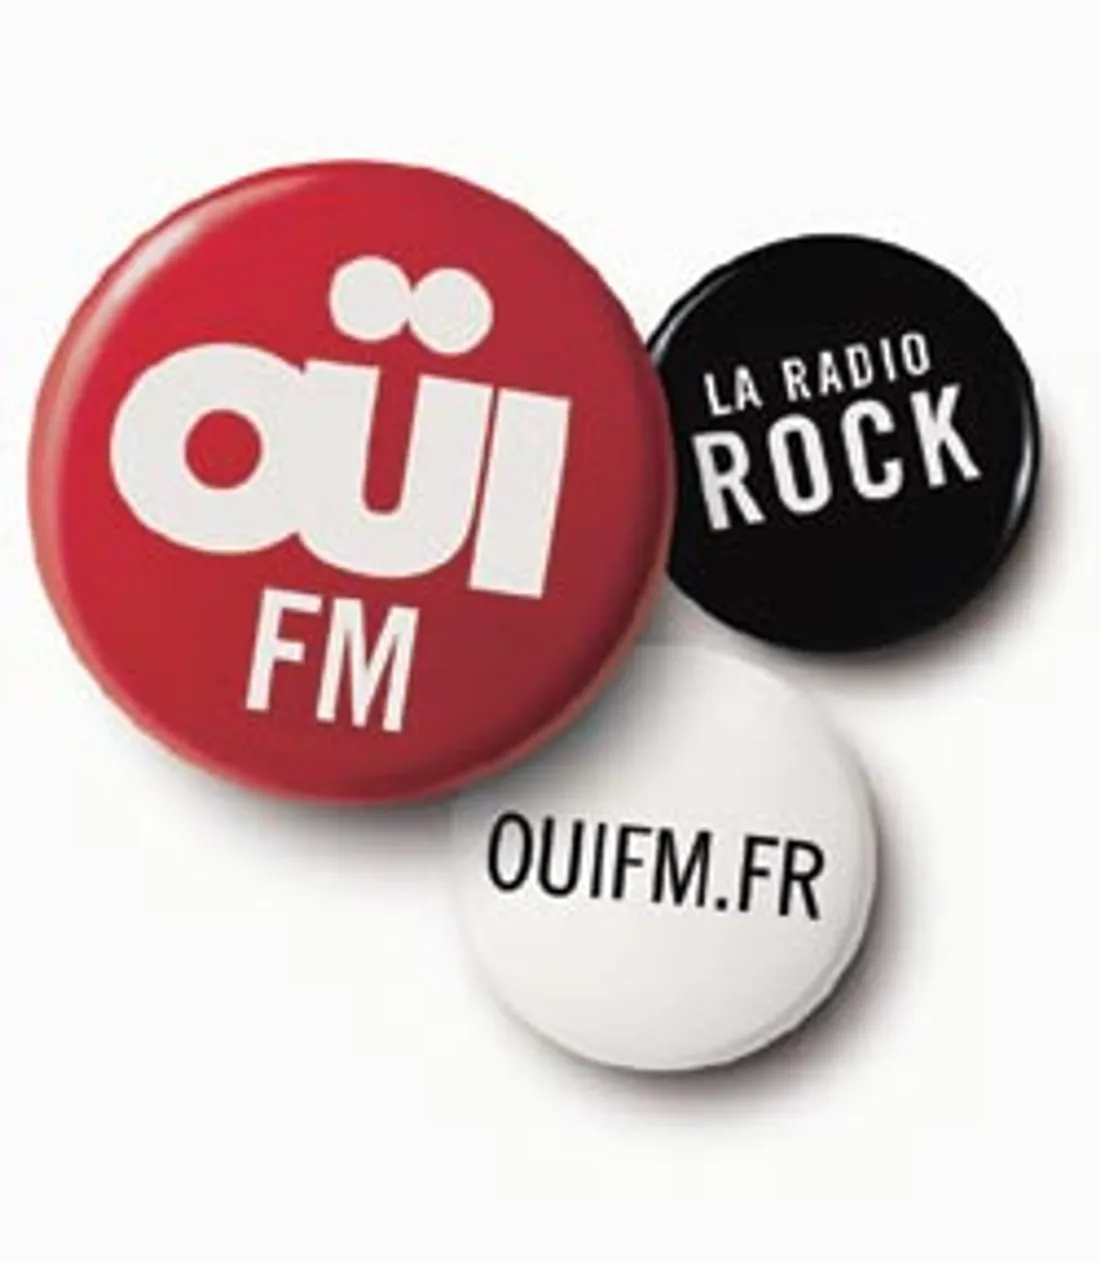 OUI FM